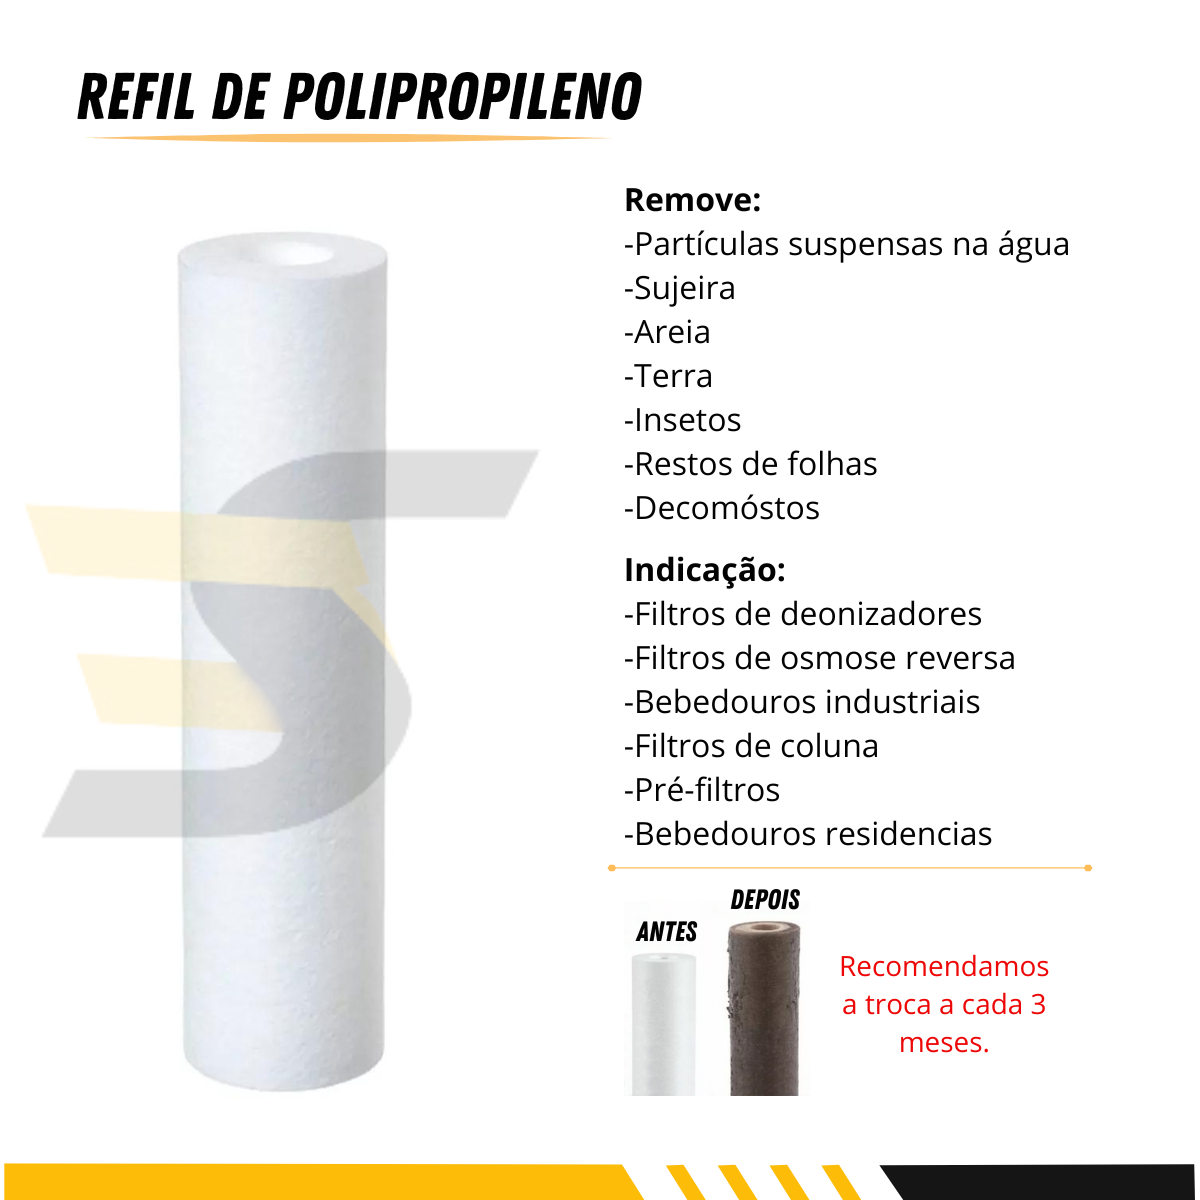 Refil Polipropileno para Filtro Snelfilter Sn-3103/pp-5m 5 Micra 10un - 2